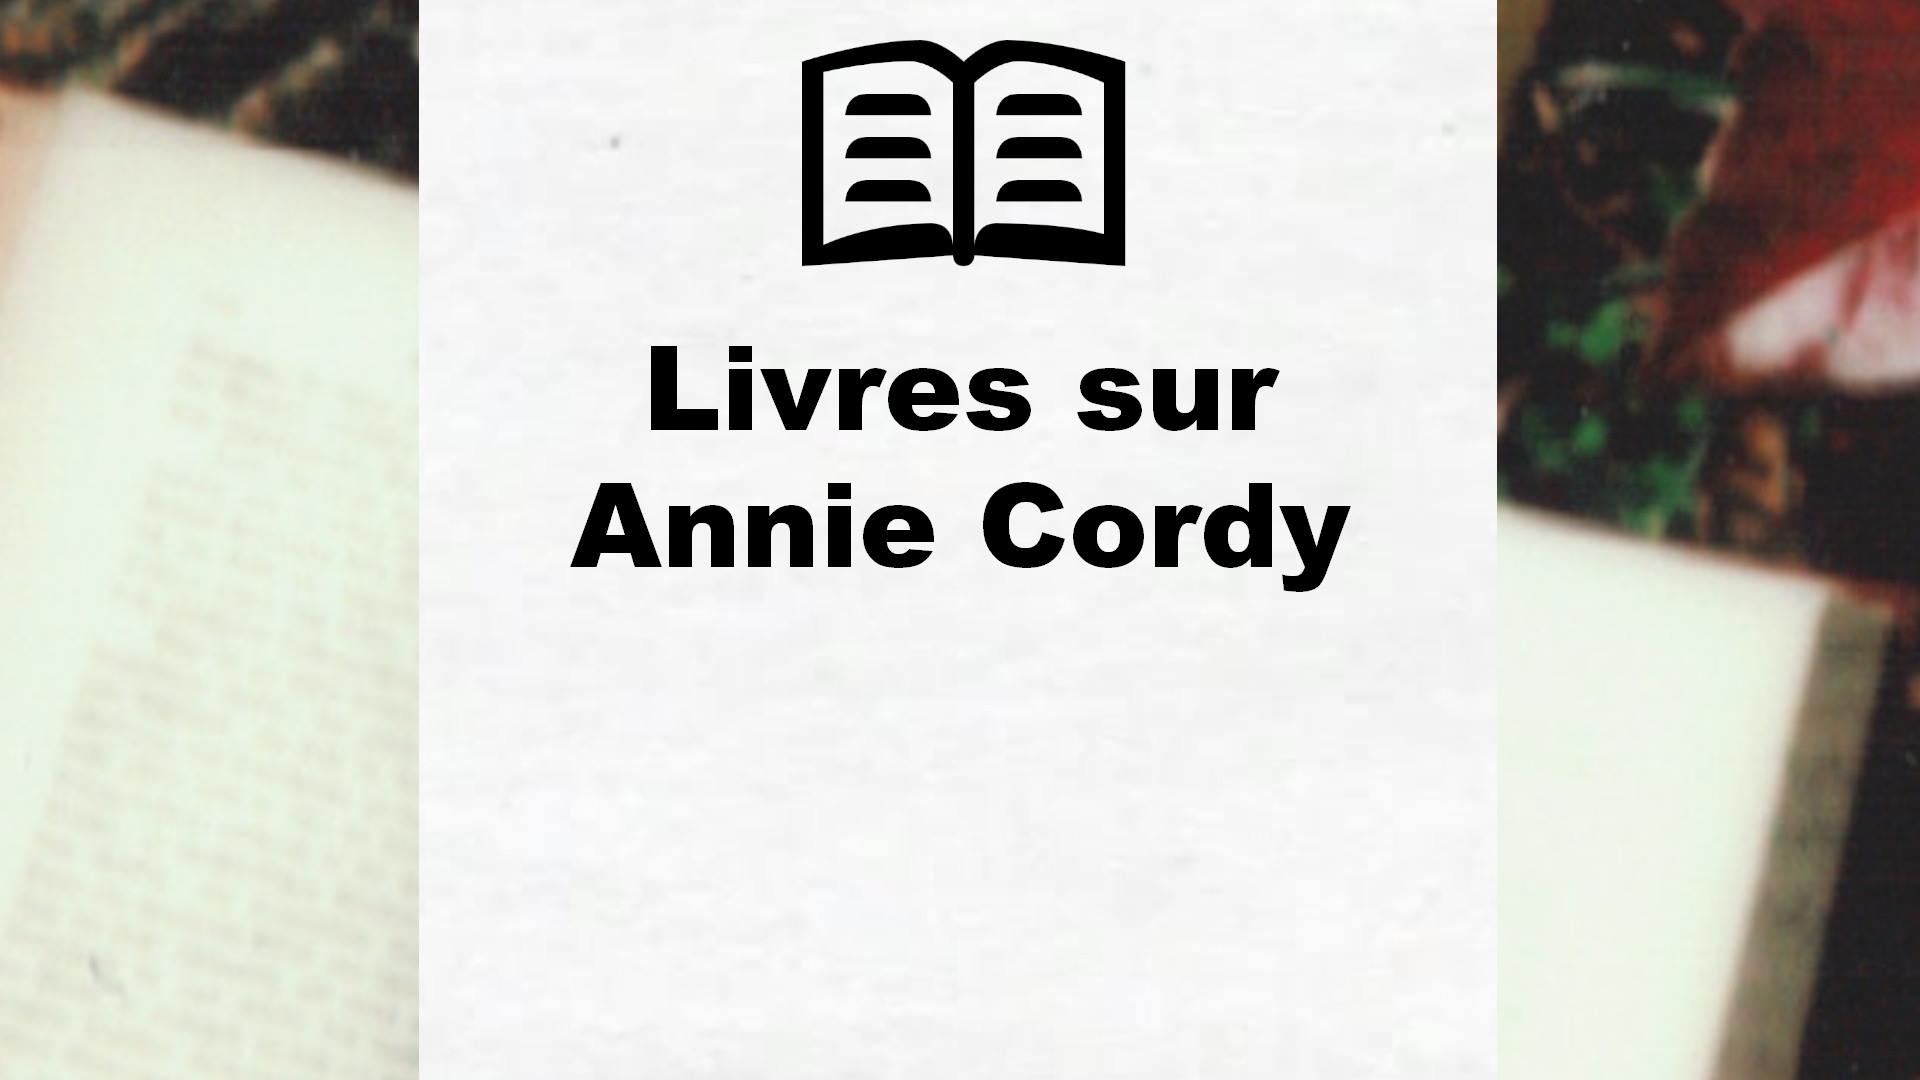 Livres sur Annie Cordy